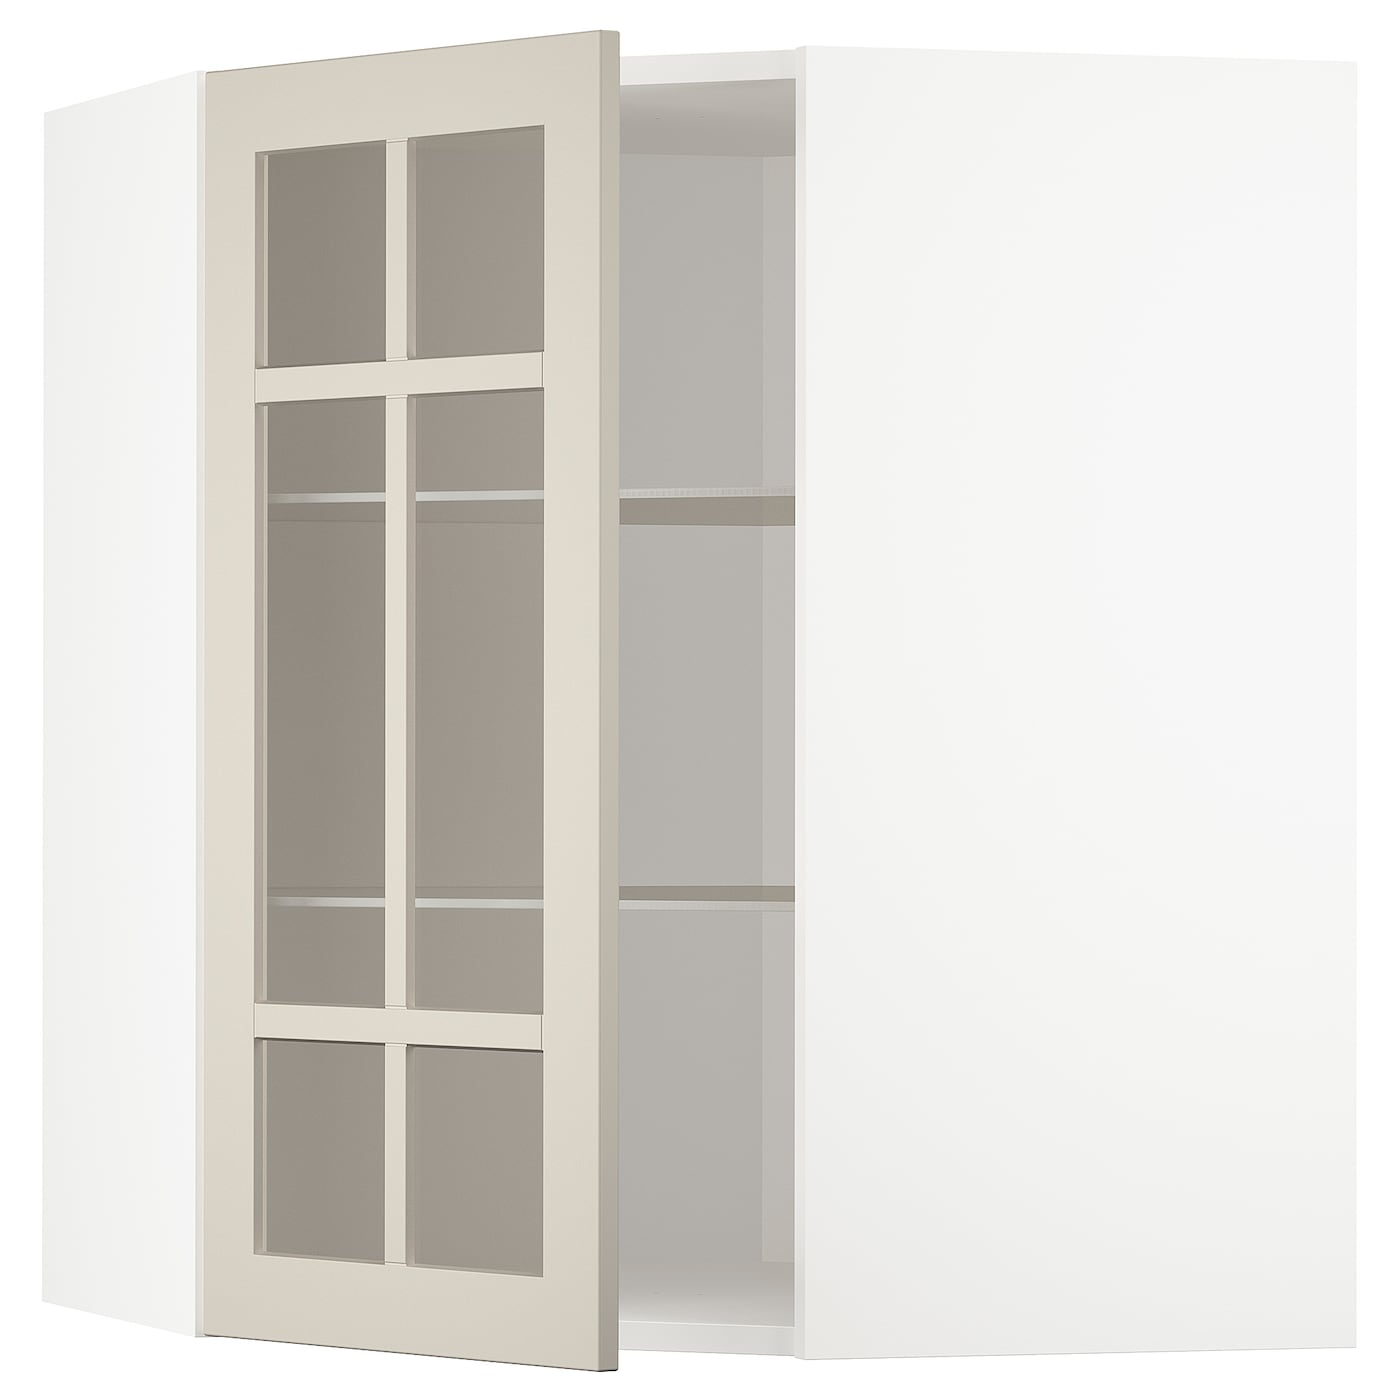 Шкаф  с дверцами и  стеклянной полочкой  - METOD IKEA/ МЕТОД ИКЕА, 68х80 см, белый/светло-бежевый